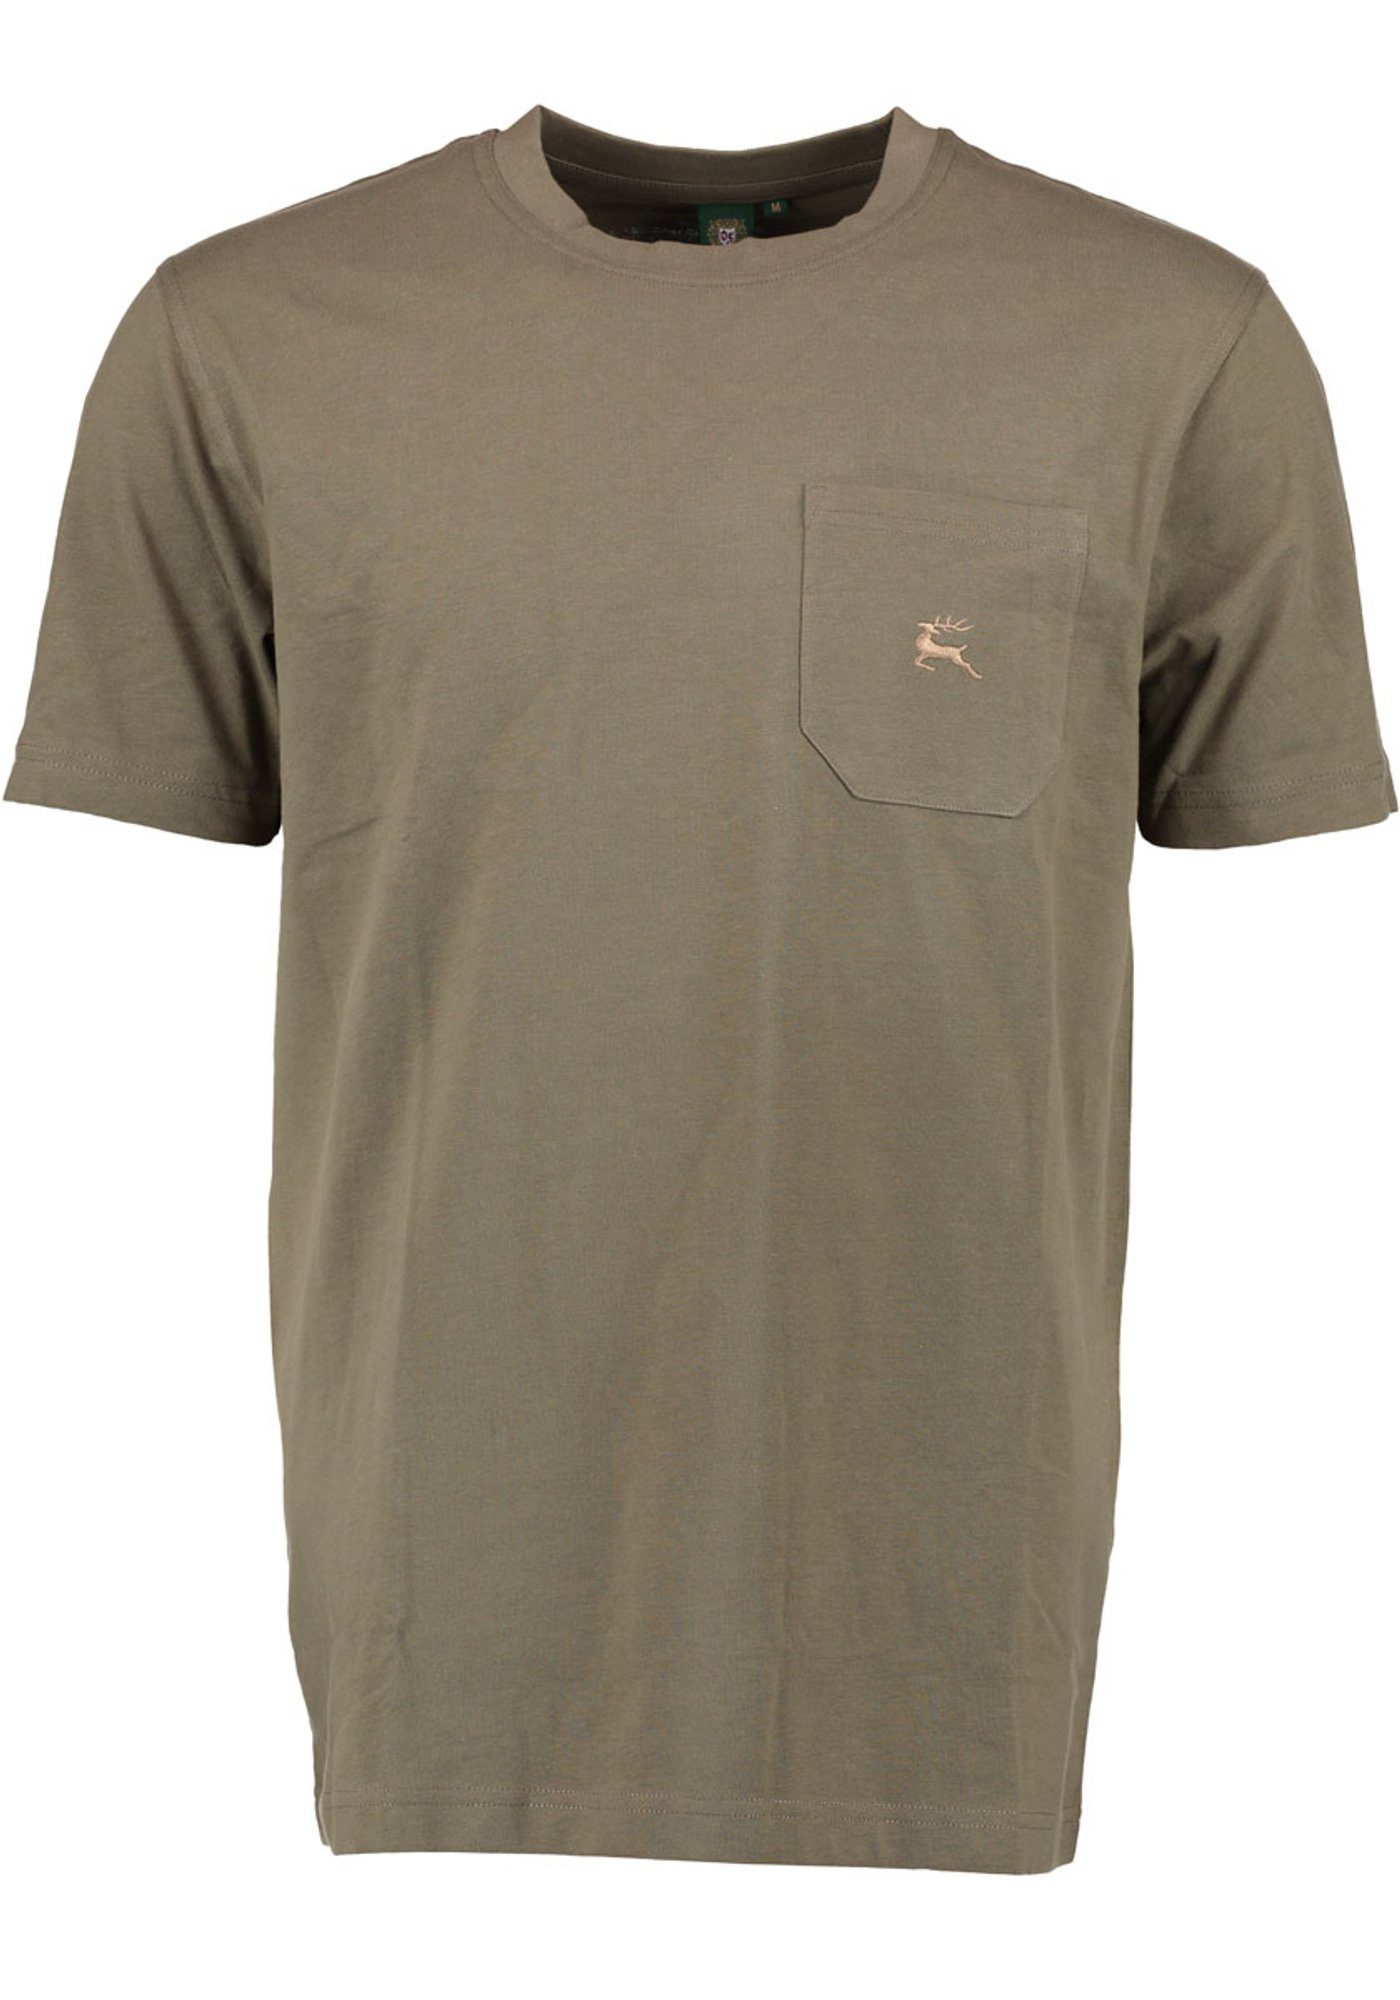 OS-Trachten T-Shirt Najio Herren Kurzarmshirt mit Hirsch-Stickerei auf der Brusttasche khaki/schlamm